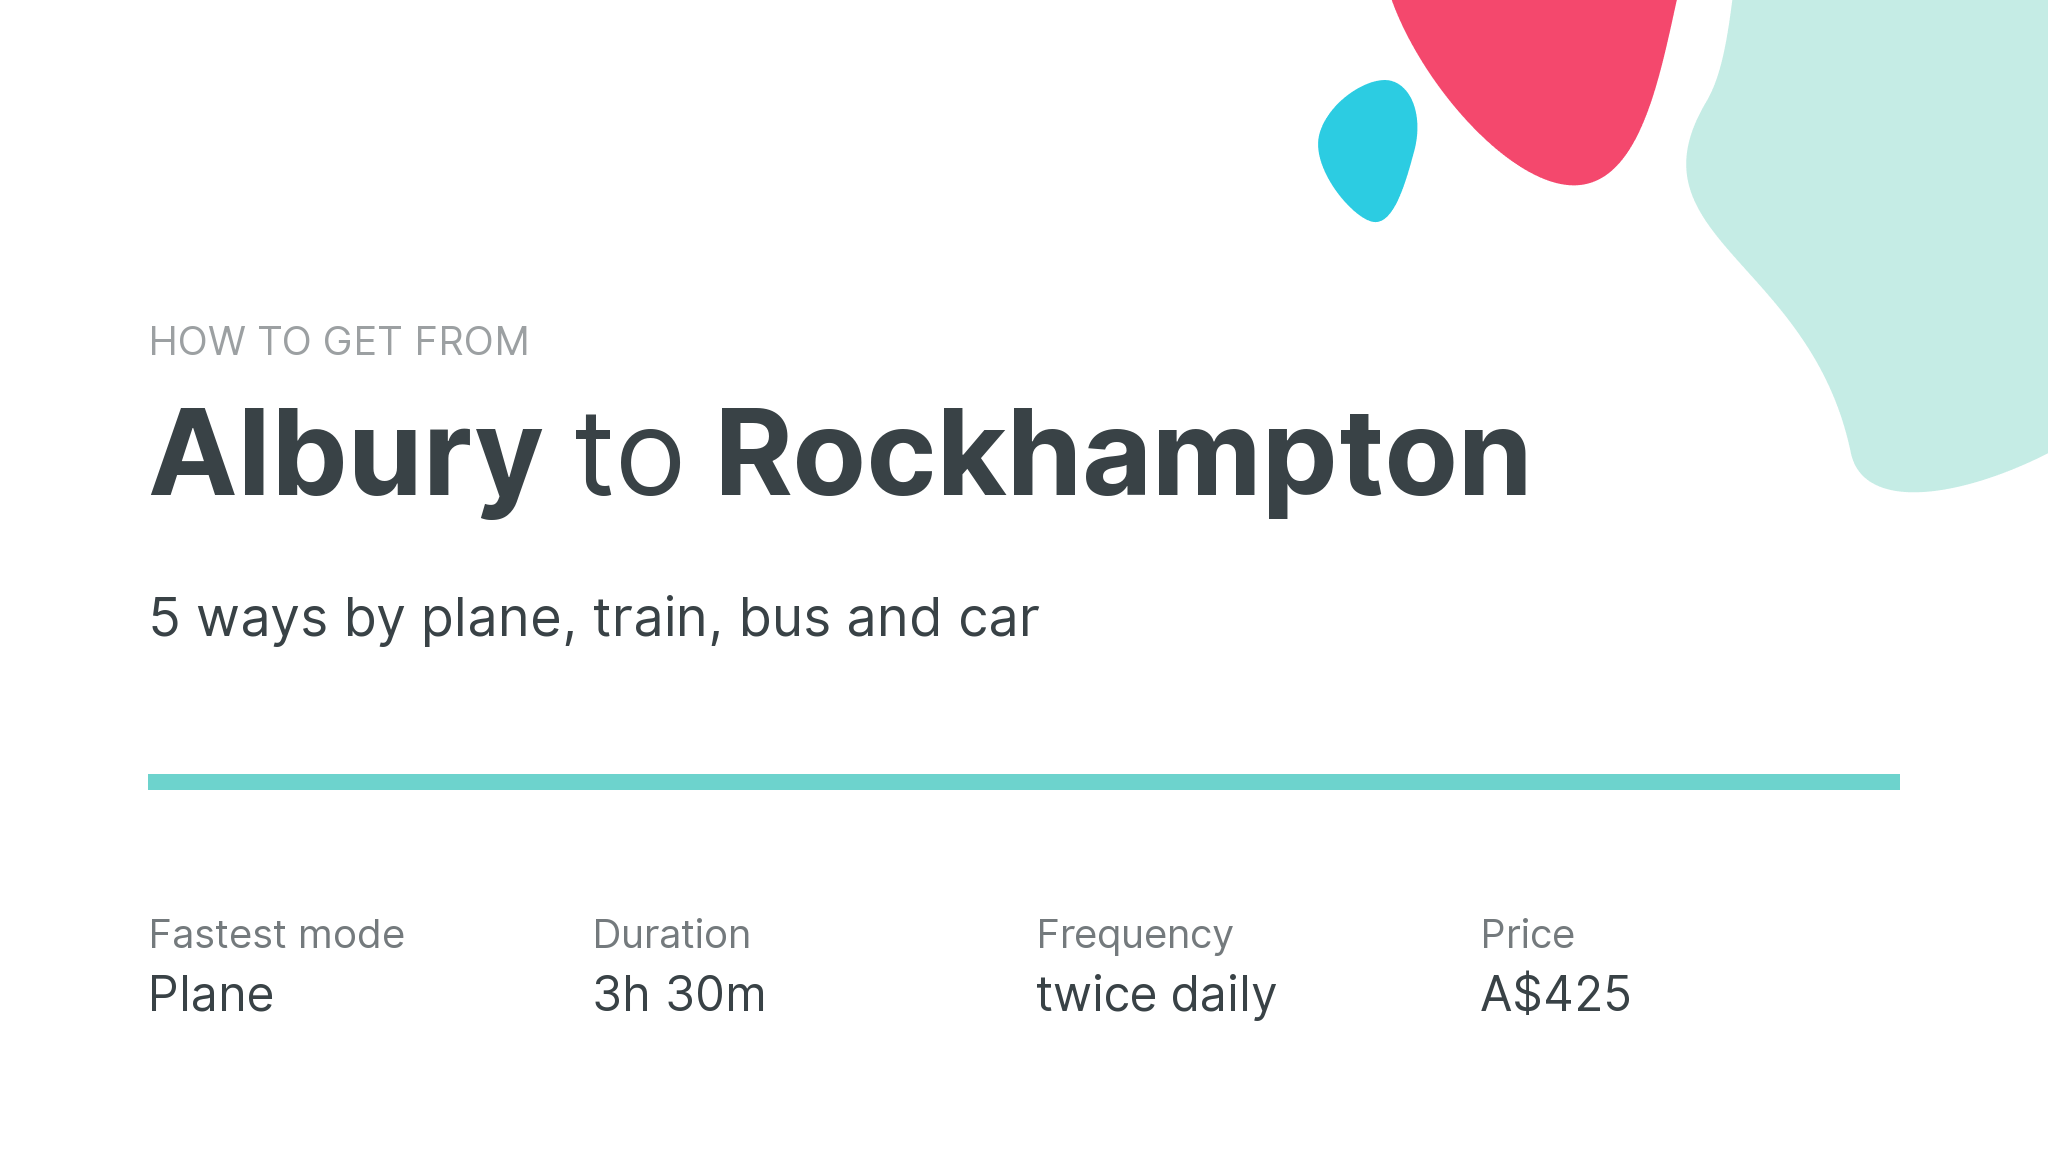 How do I get from Albury to Rockhampton